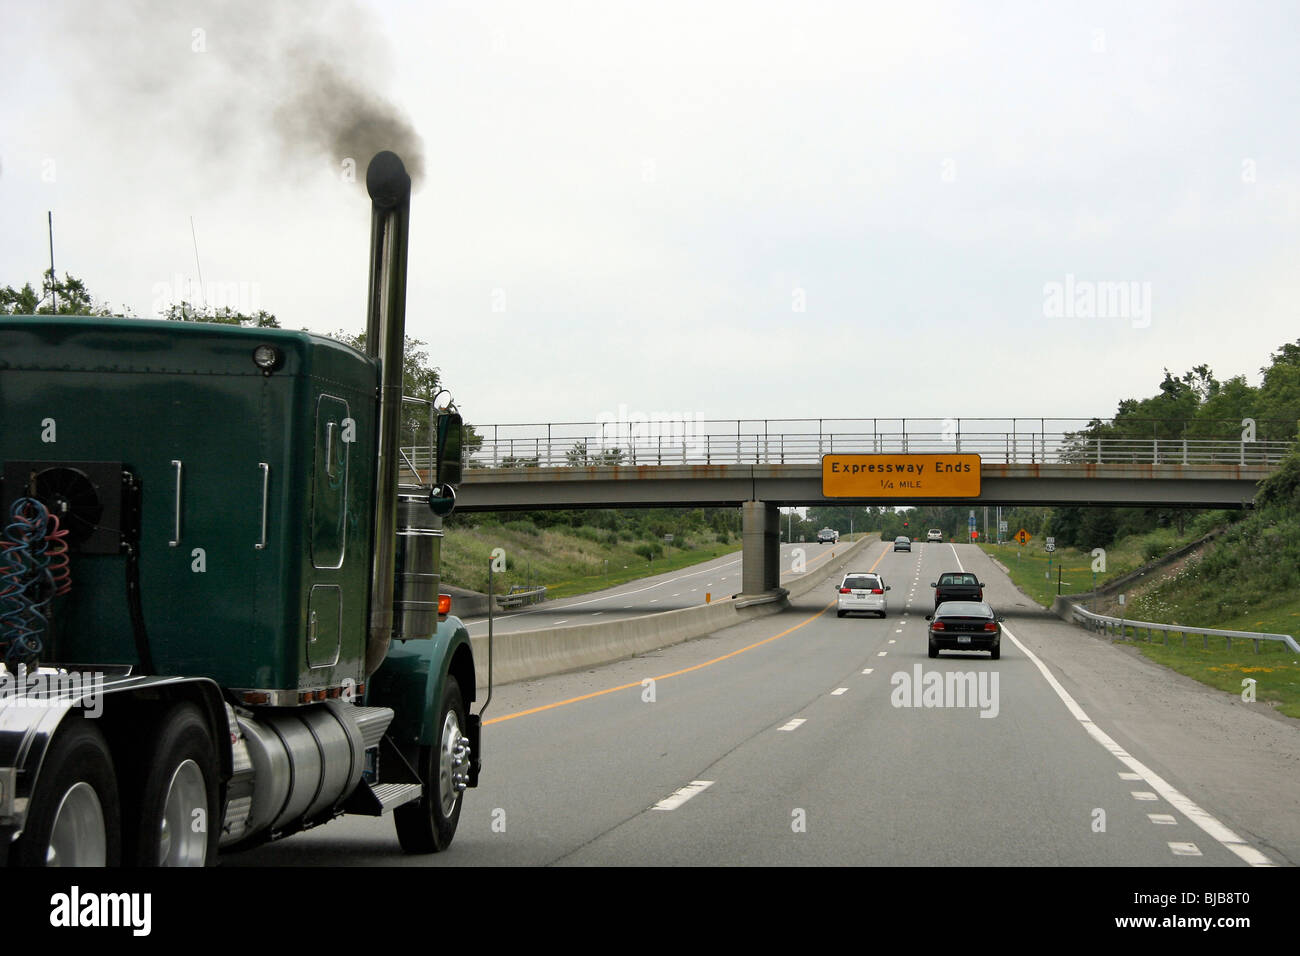 Chevy Diesel Trucks Blowing Smoke